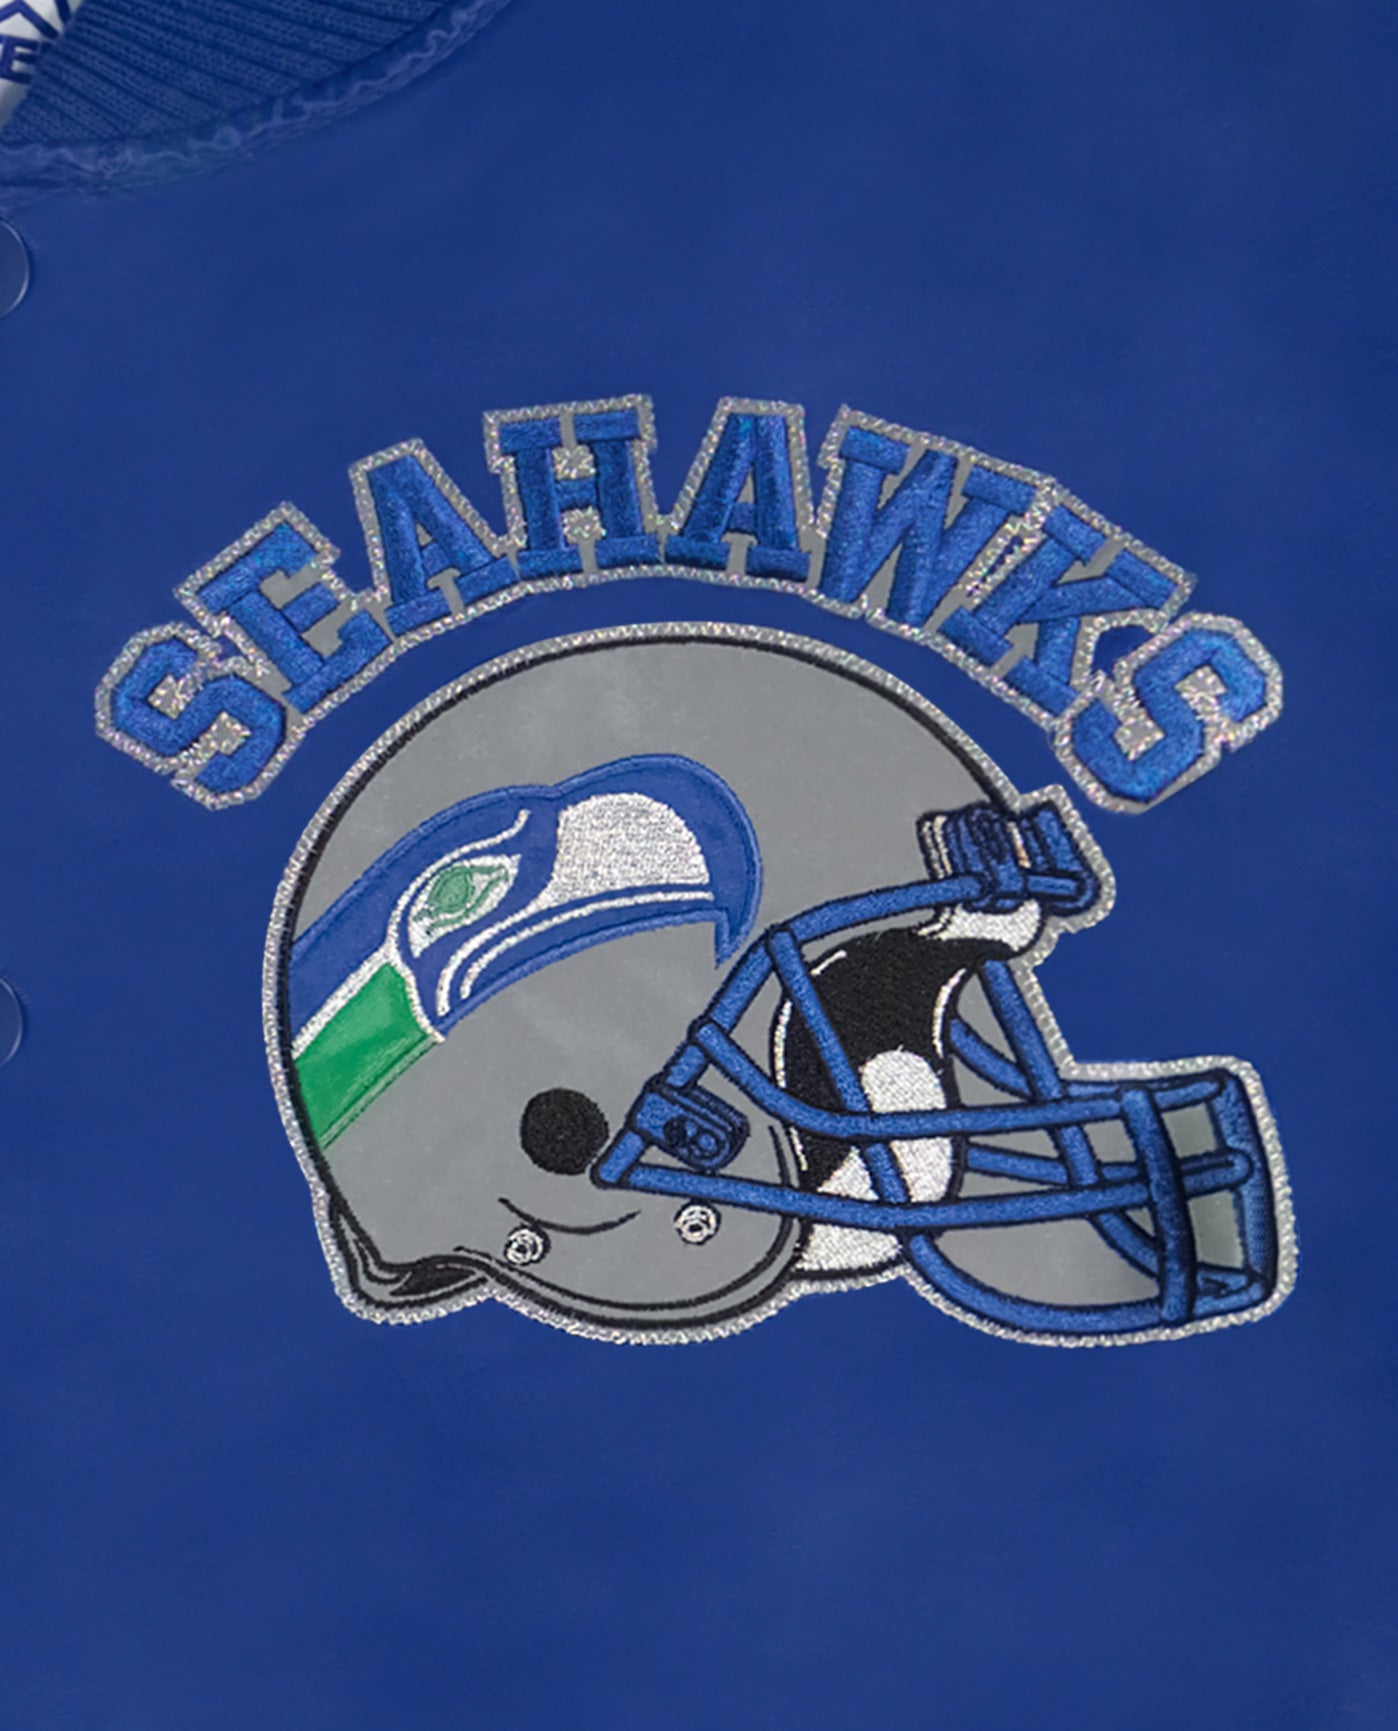 Seahawks Helmet and Logo | Seahawks Blue